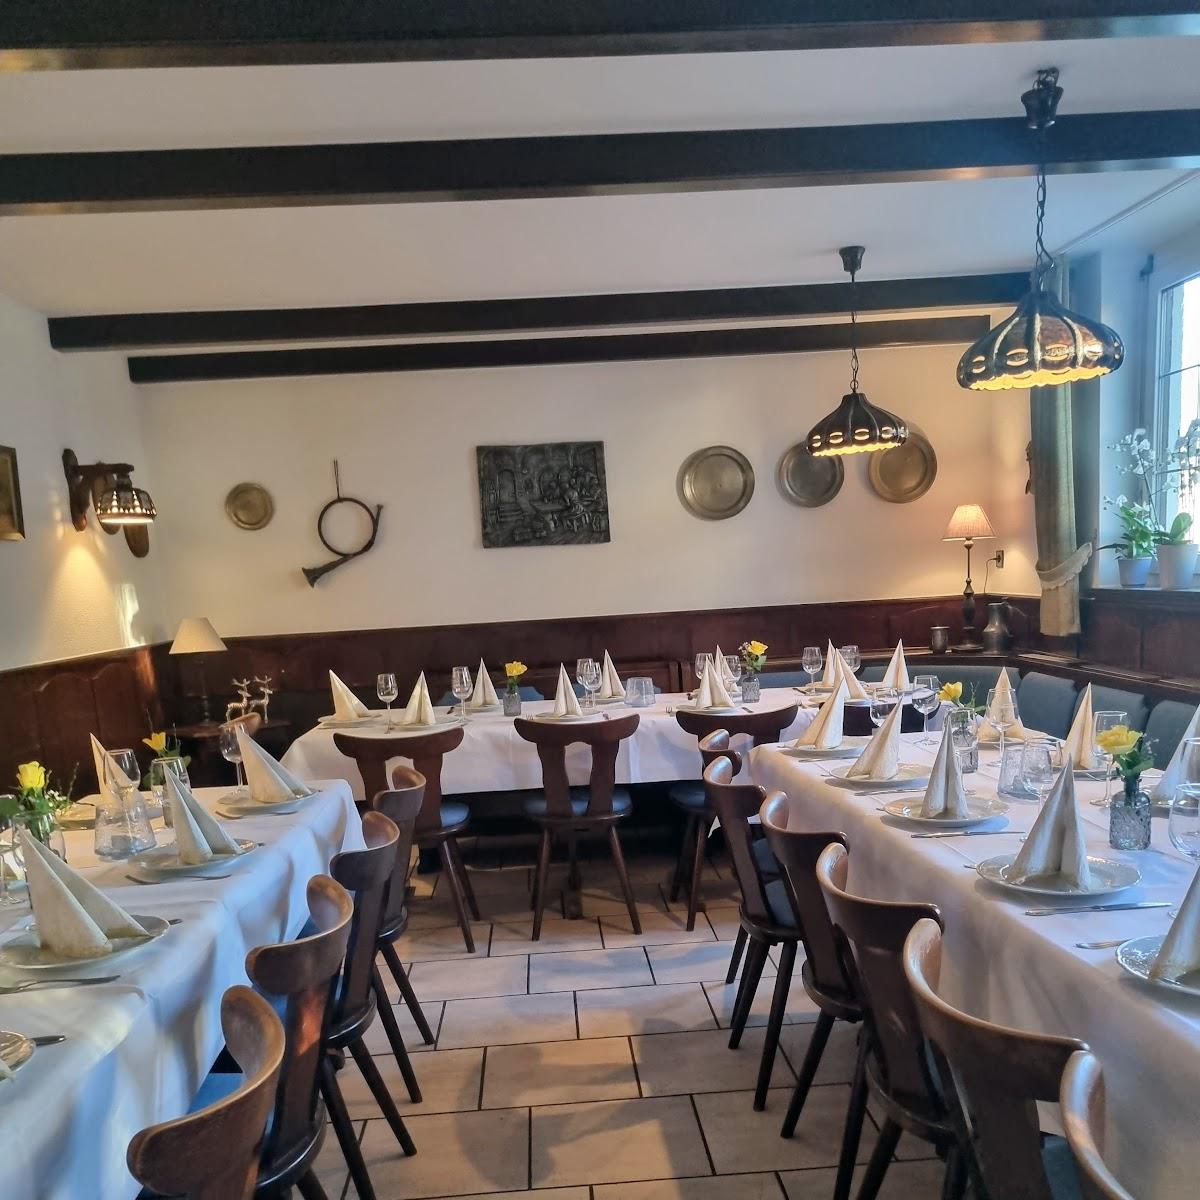 Restaurant "Gasthaus zur Sonne" in Willstätt